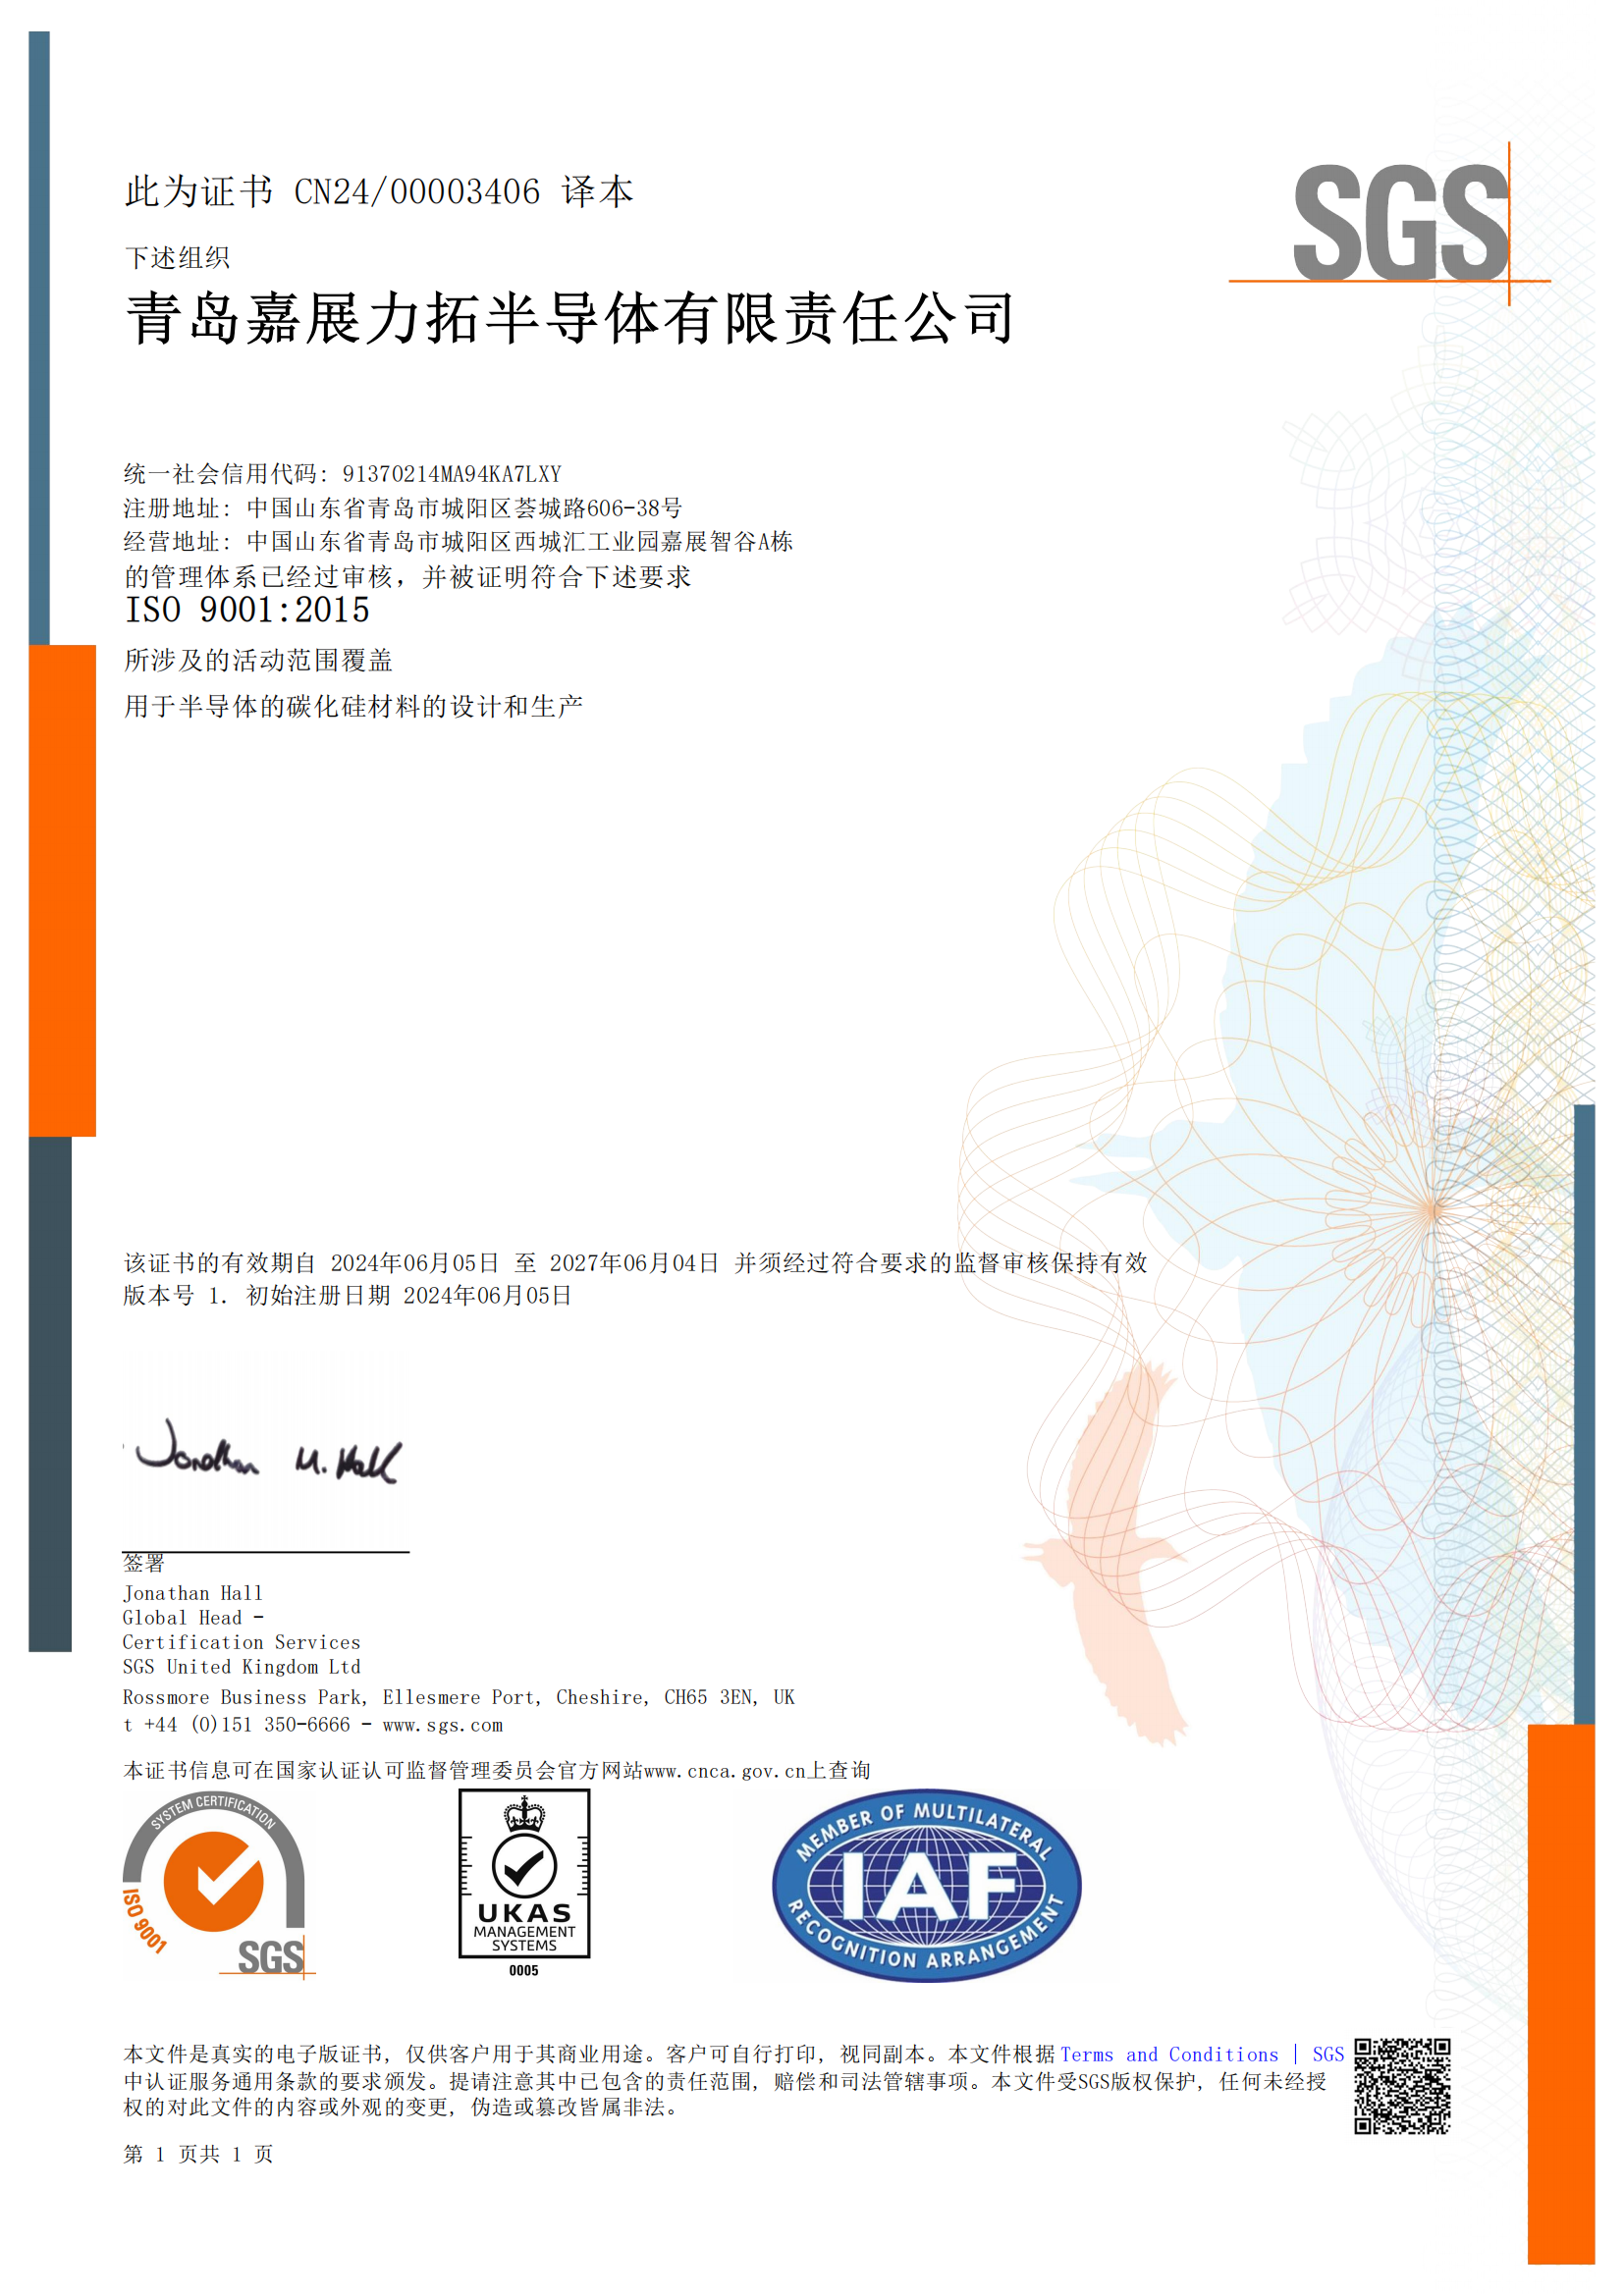 嘉展力拓成功获得 ISO9001: 2015 质量管理体系认证证书